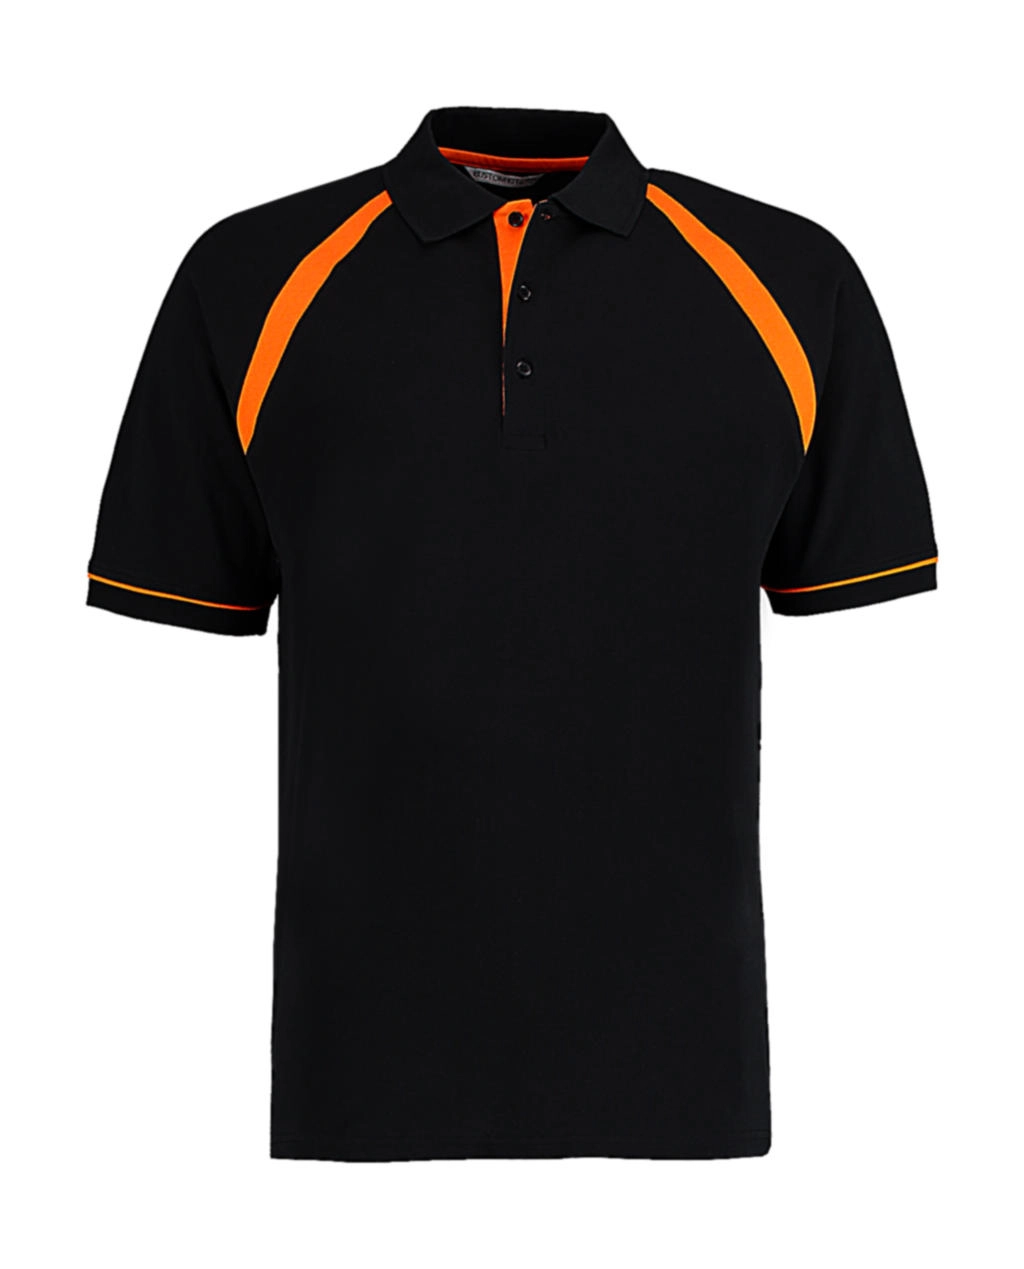 Classic Fit Oak Hill Polo zum Besticken und Bedrucken in der Farbe Black/Orange mit Ihren Logo, Schriftzug oder Motiv.